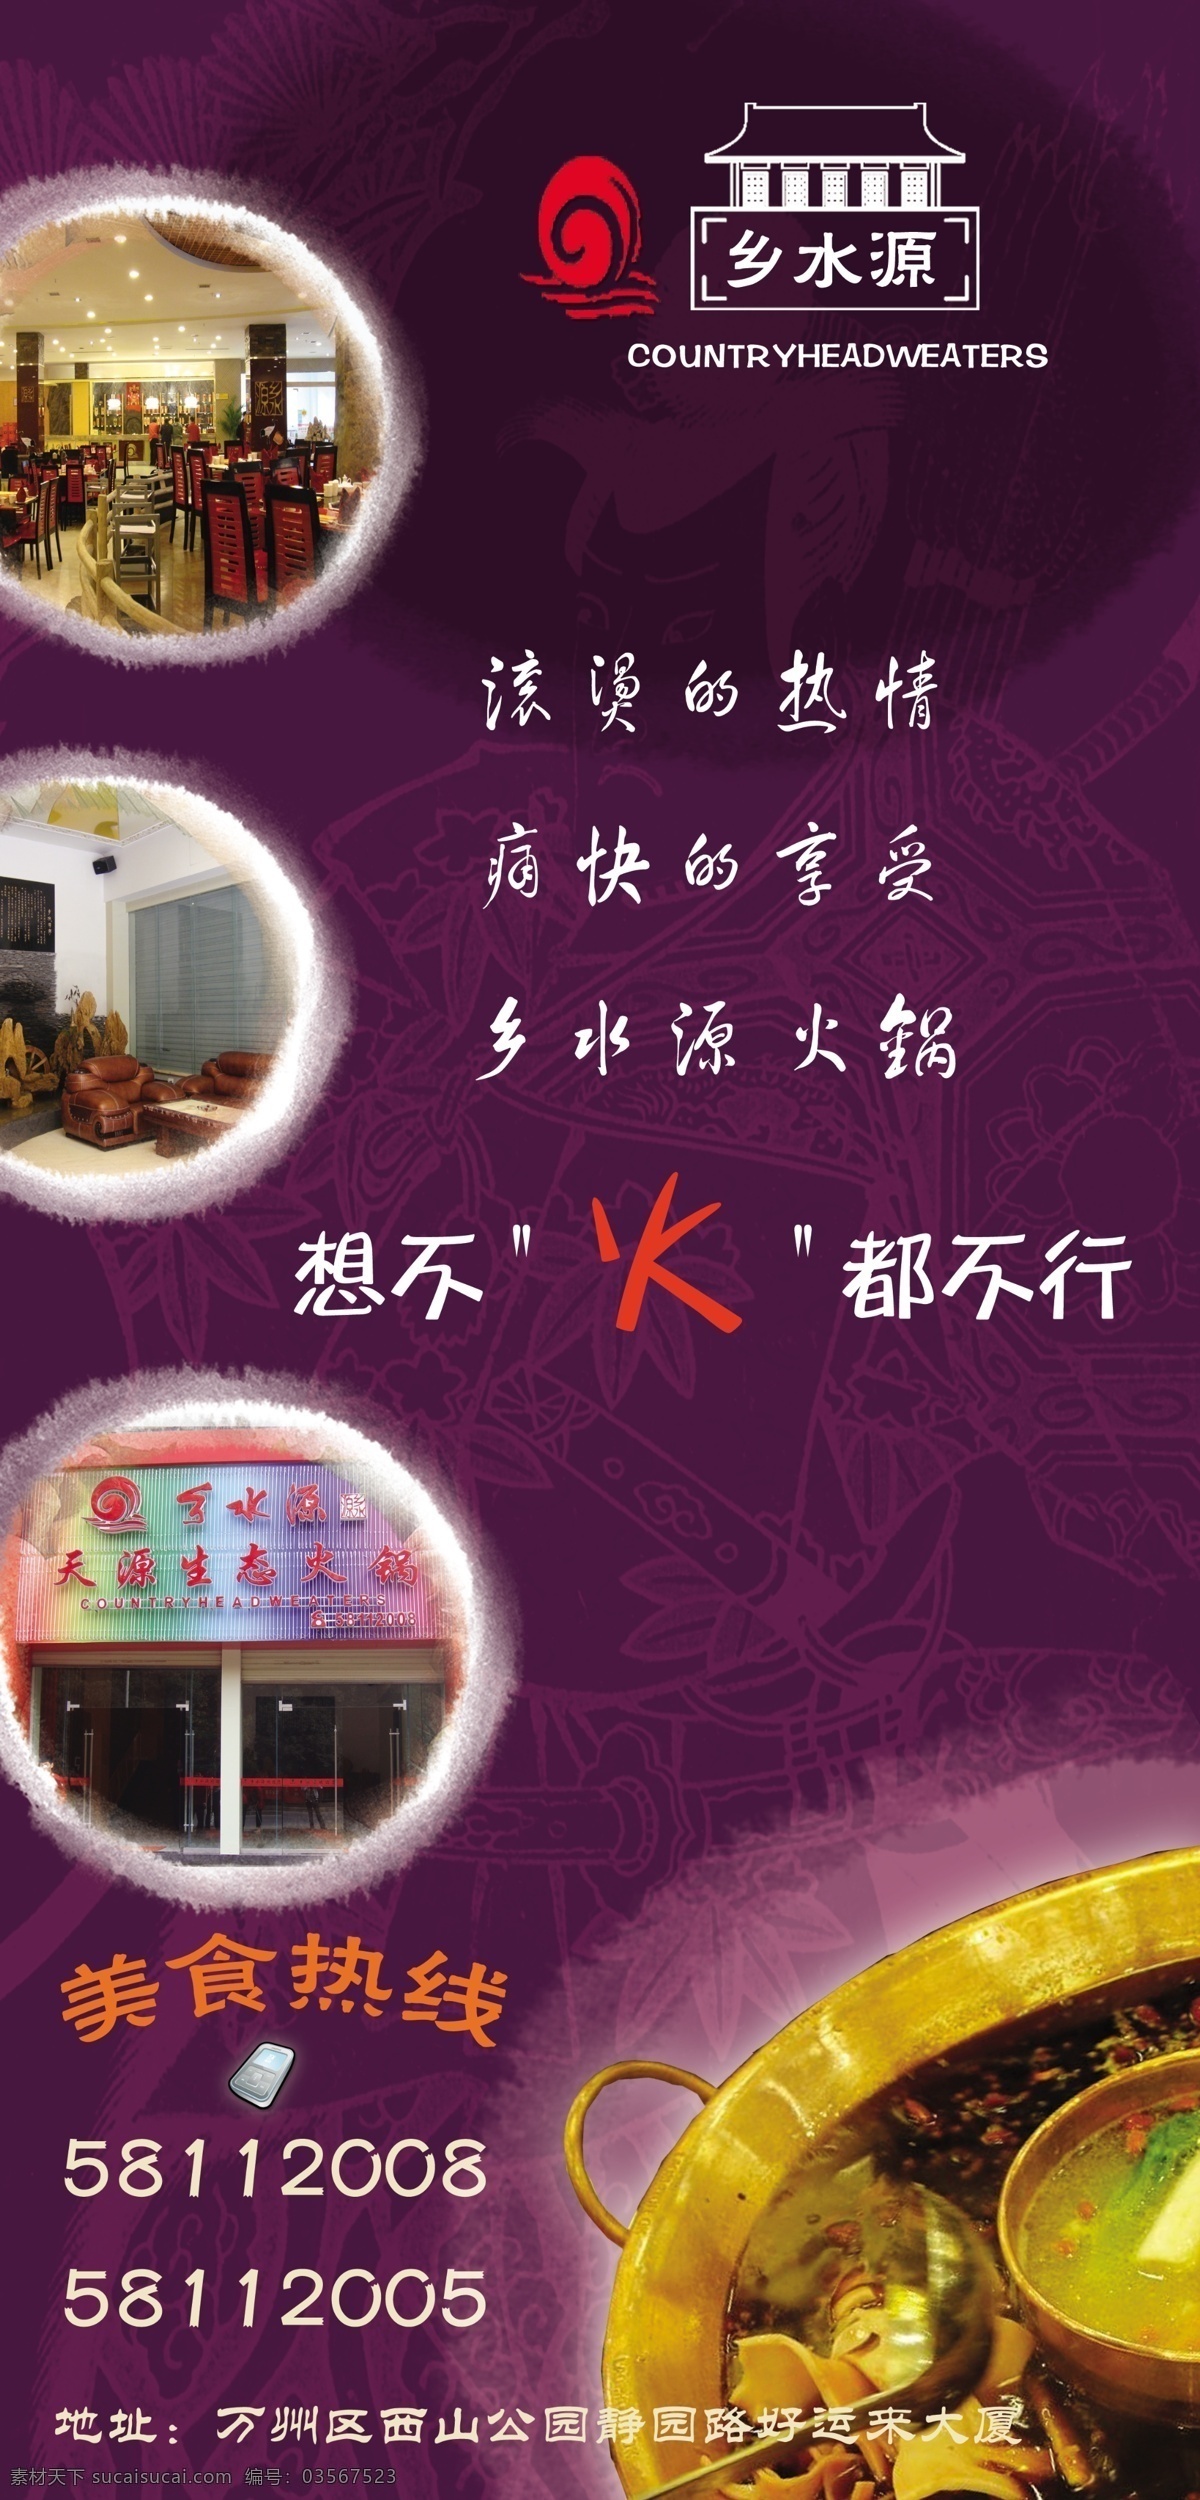 火锅 广告 psd源文件 餐饮 模板 企业 食谱 菜谱 ps 展板 海报 企业文化海报